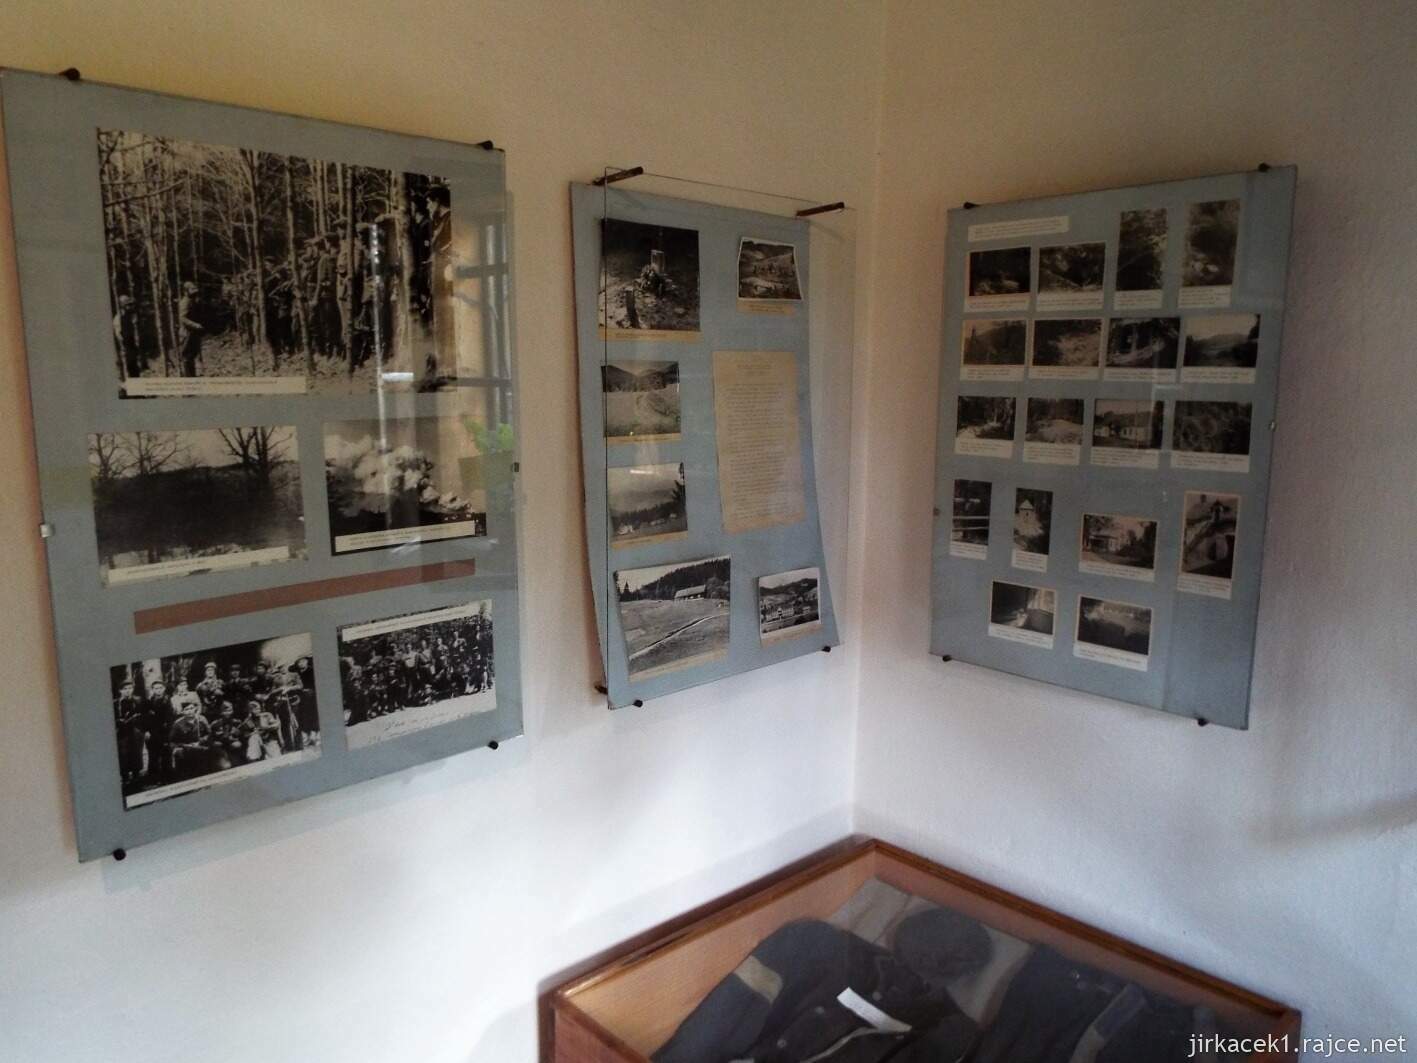 022 - Velké Karlovice - muzeum 26 - expozice o partyzánech na Valašsku